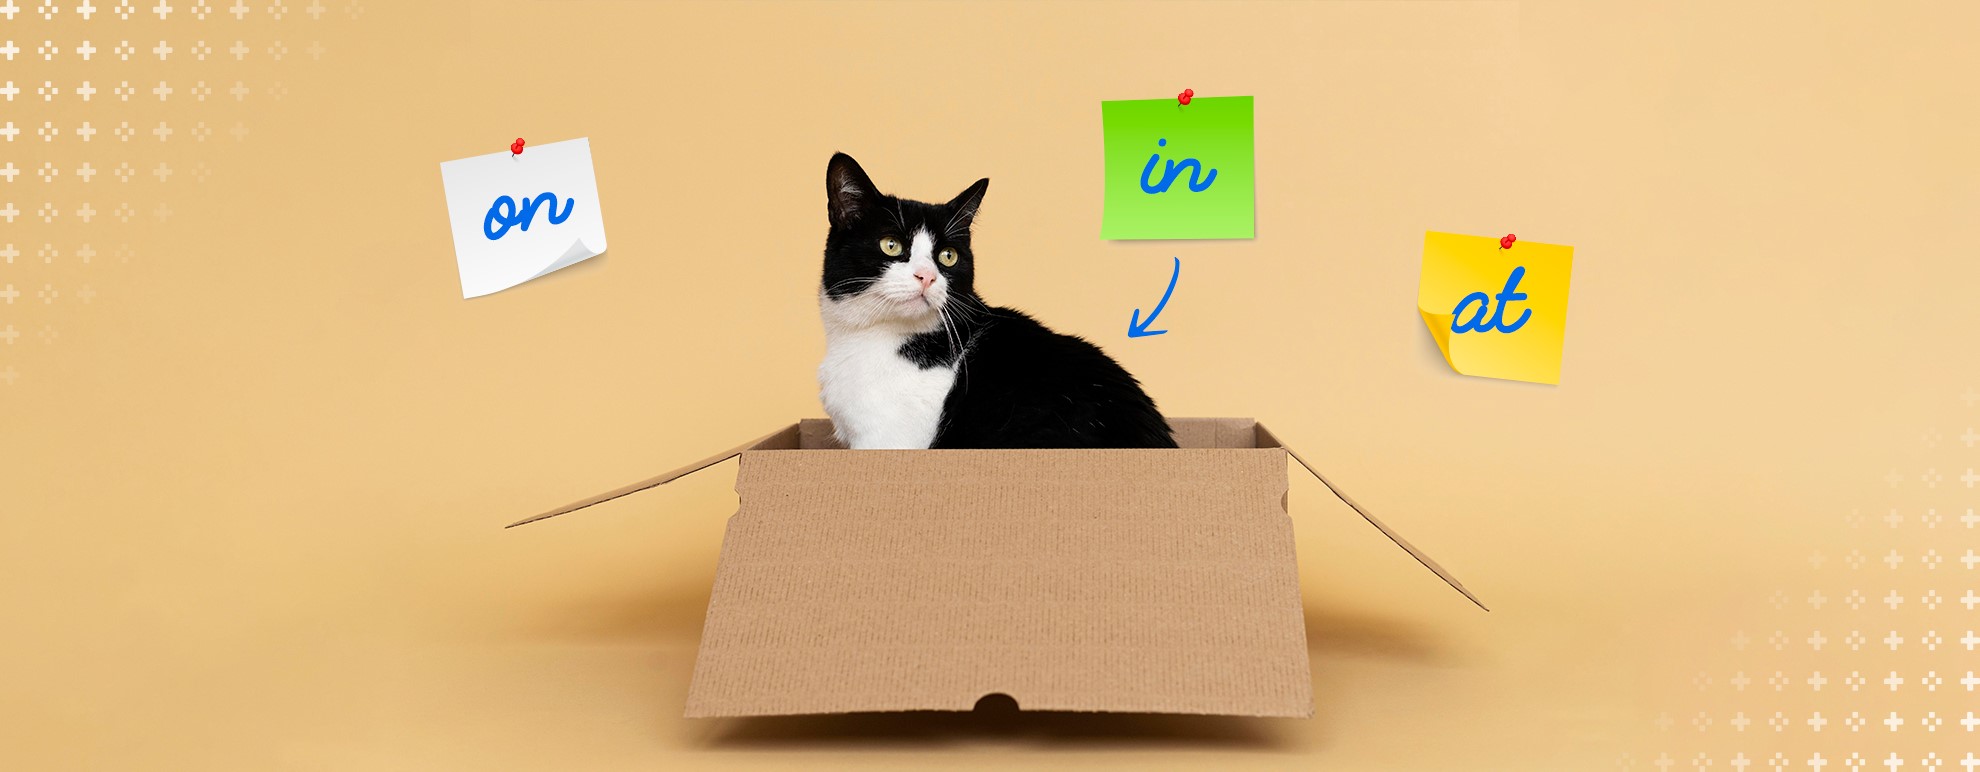 imagem de um gato dentro de uma caixa, destacando as preposições "in", "on" e "at"